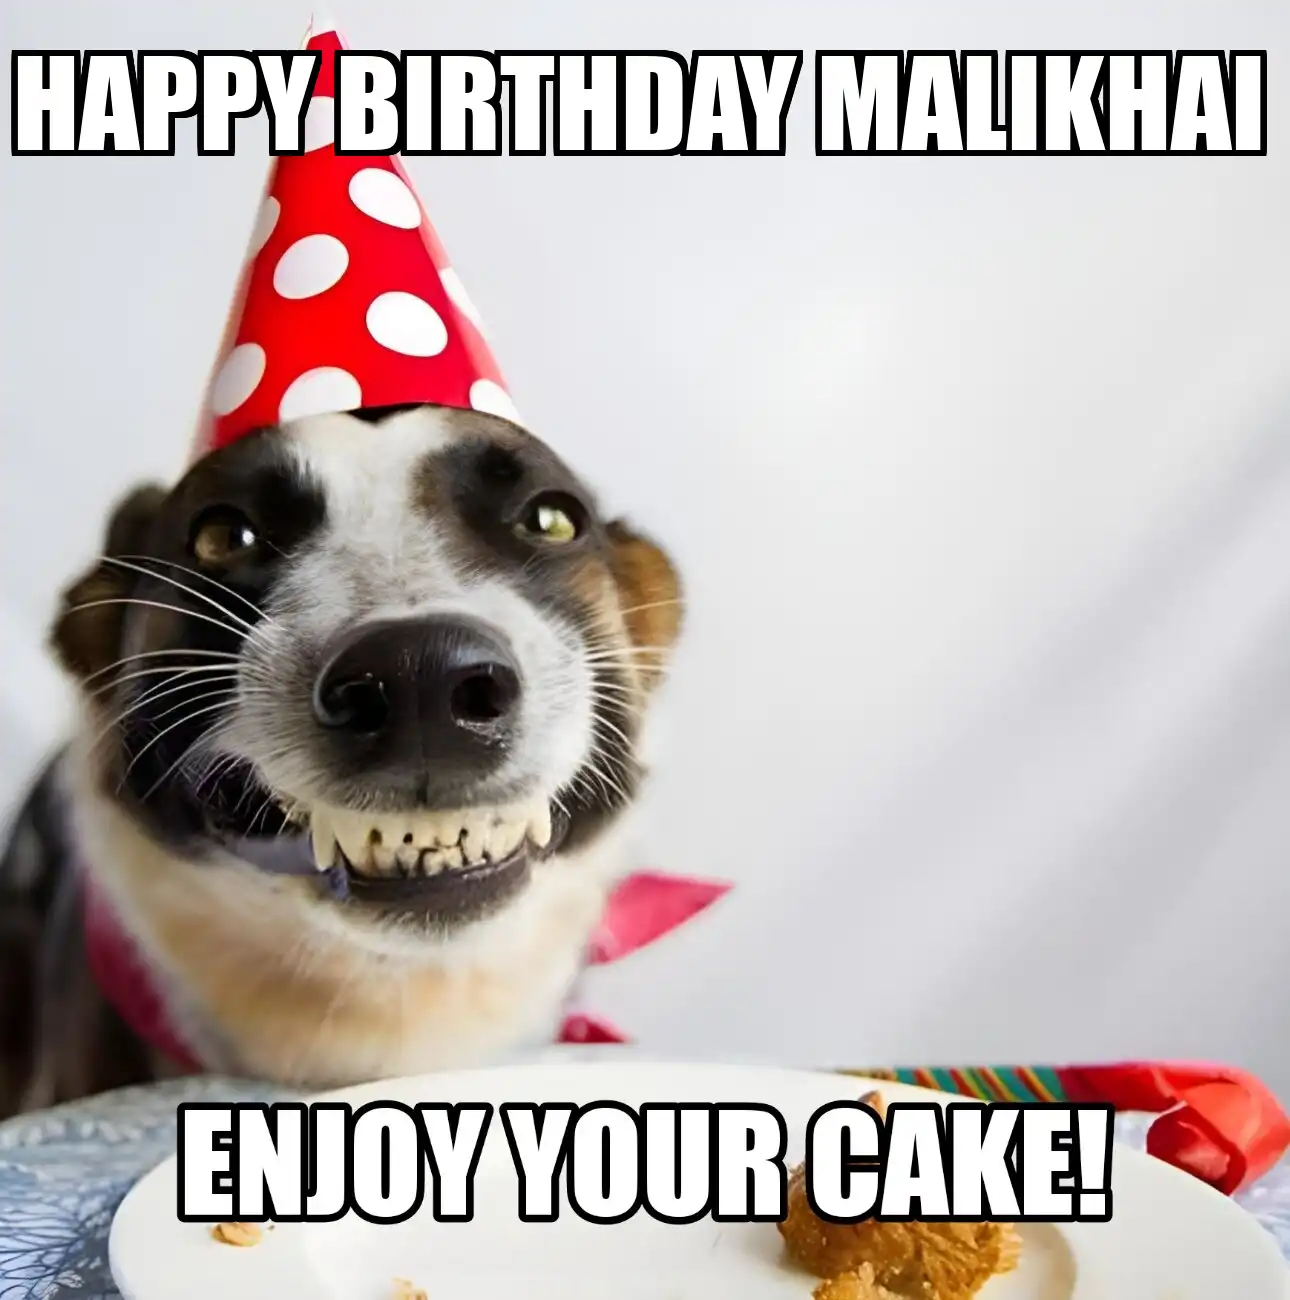 Happy Birthday Malikhai Enjoy Your Cake Dog Meme